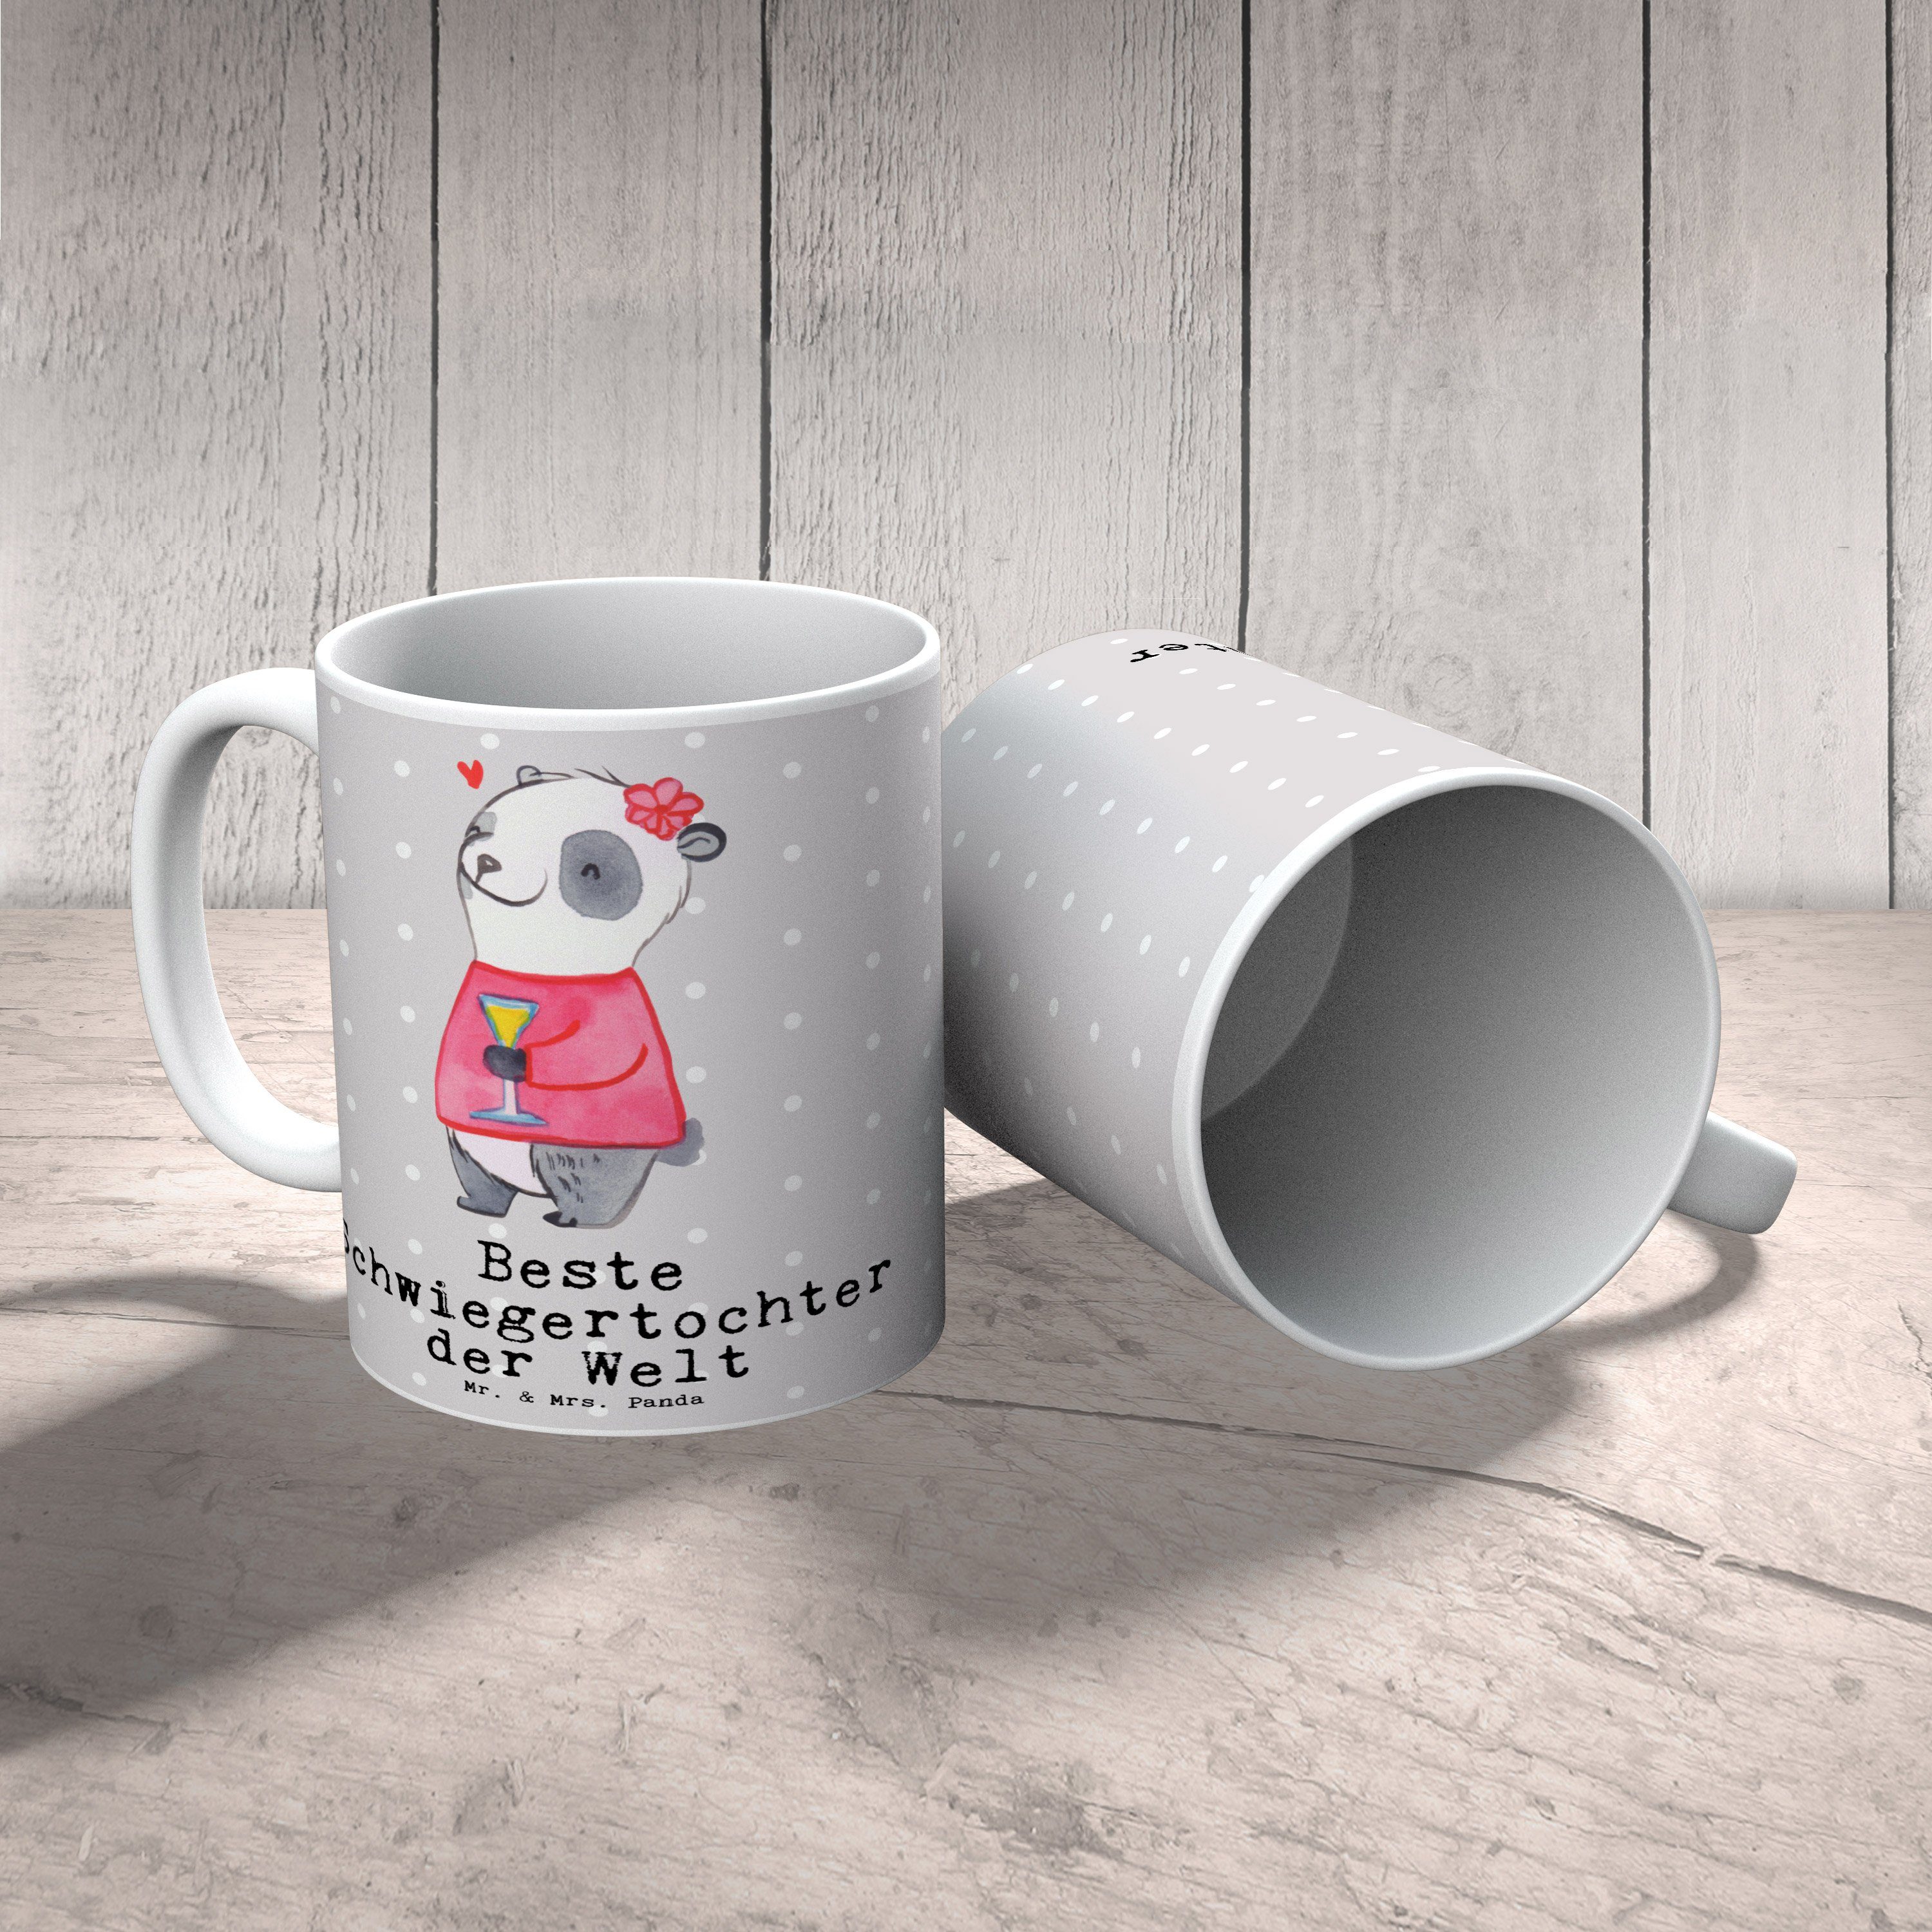 Mr. & Mrs. - Panda Pastell Büro, Tasse Beste der Grau Geschenk, - Panda Schwiegertochter Welt Keramik